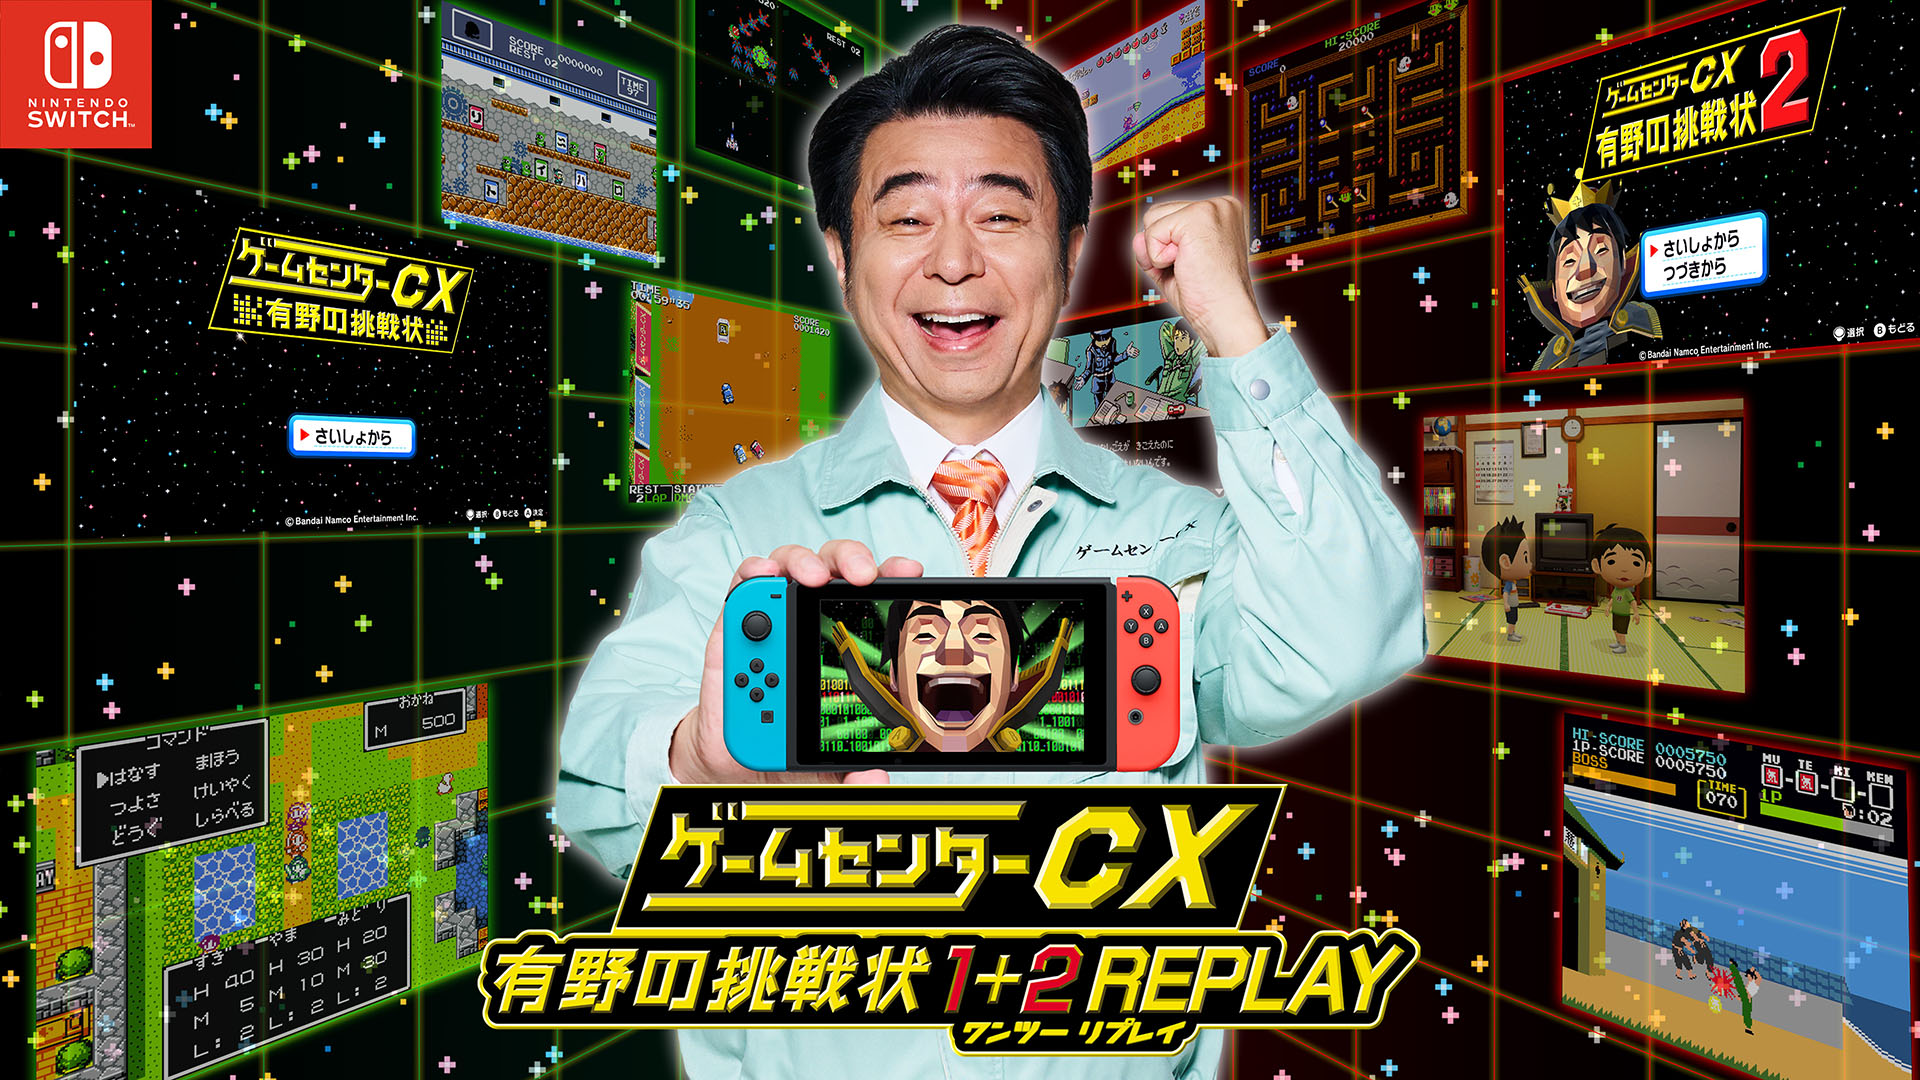 ゲームセンターCX 有野の挑戦状 1+2 REPLAY」の発売が決定。DSで ...